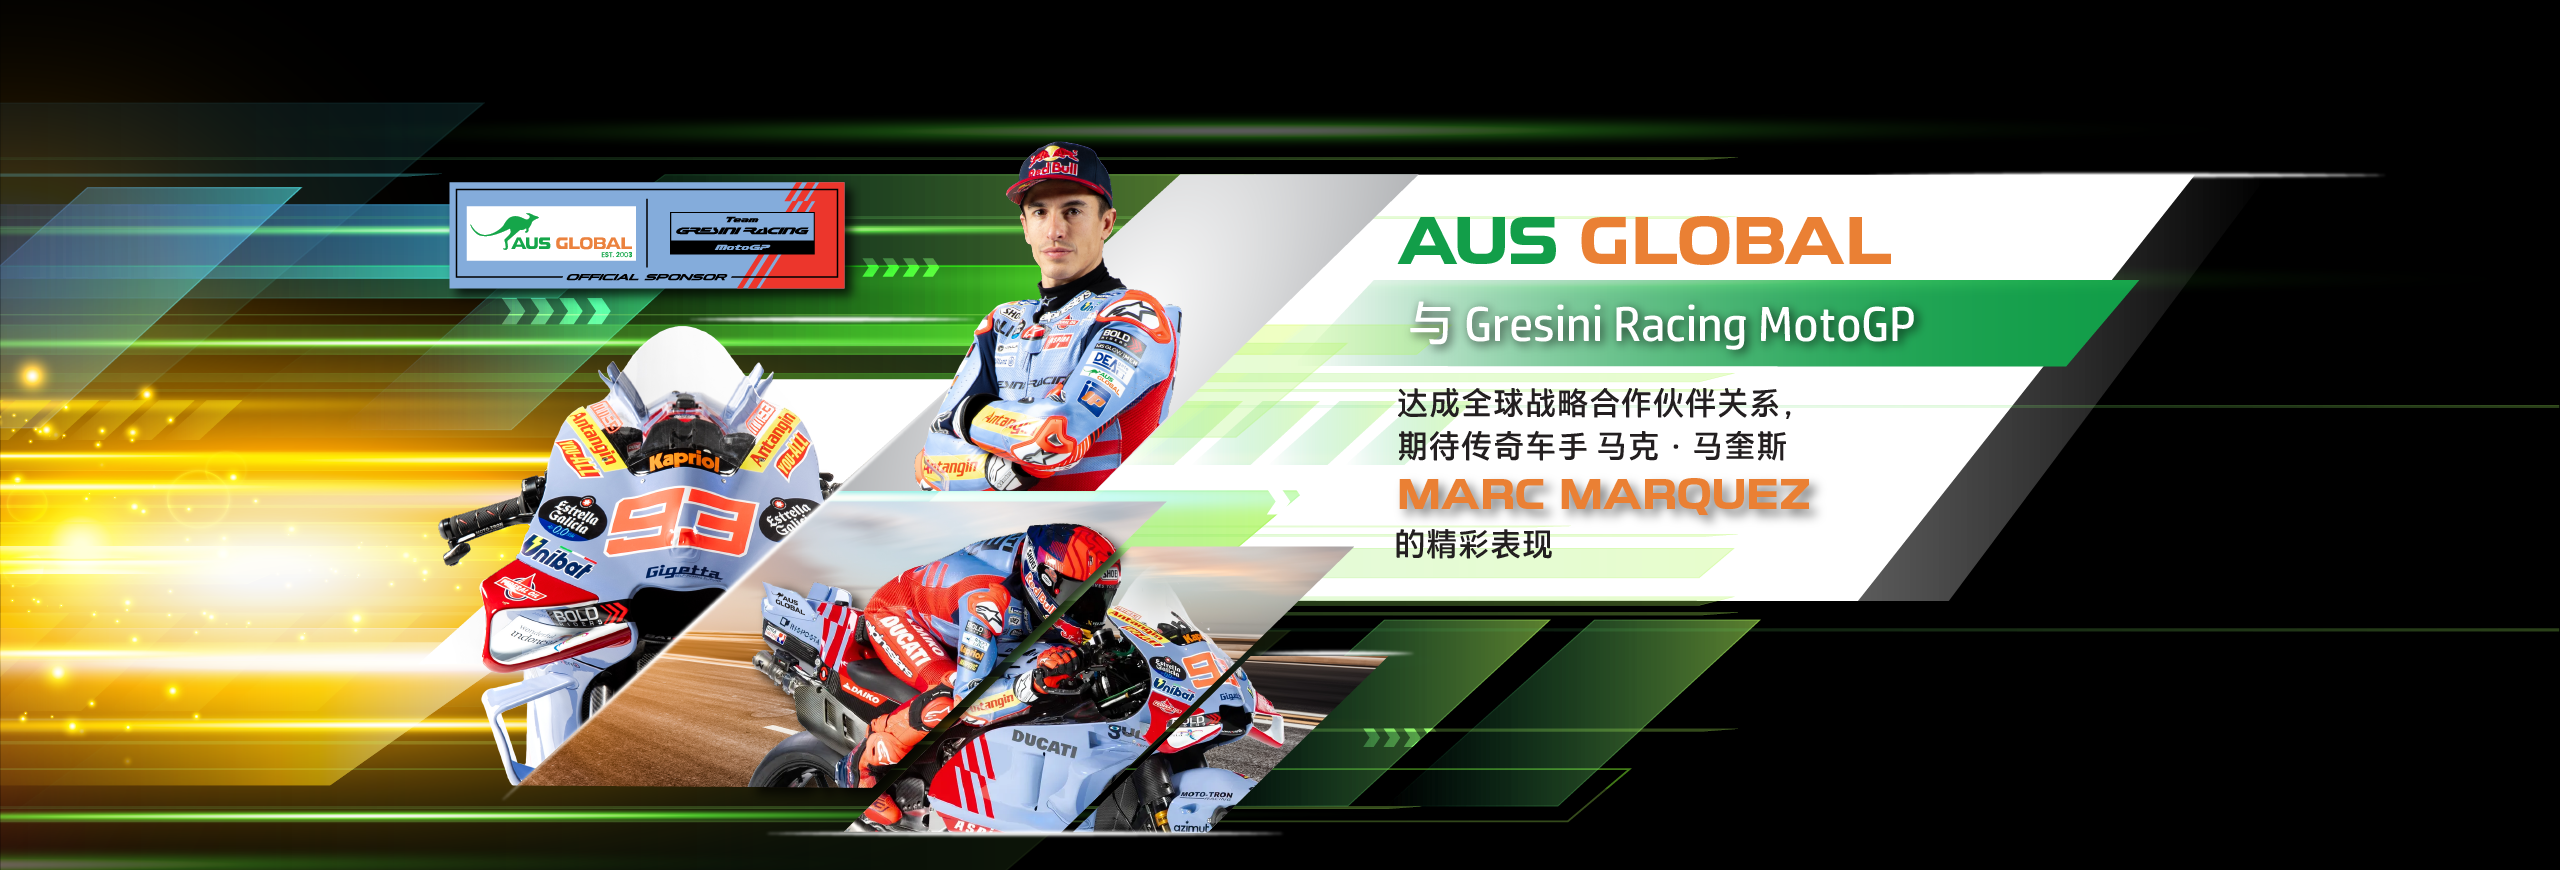 【赛车体育】AUS GLOBAL 与 Gresini Racing MotoGP 达成全球战略合作伙伴关系